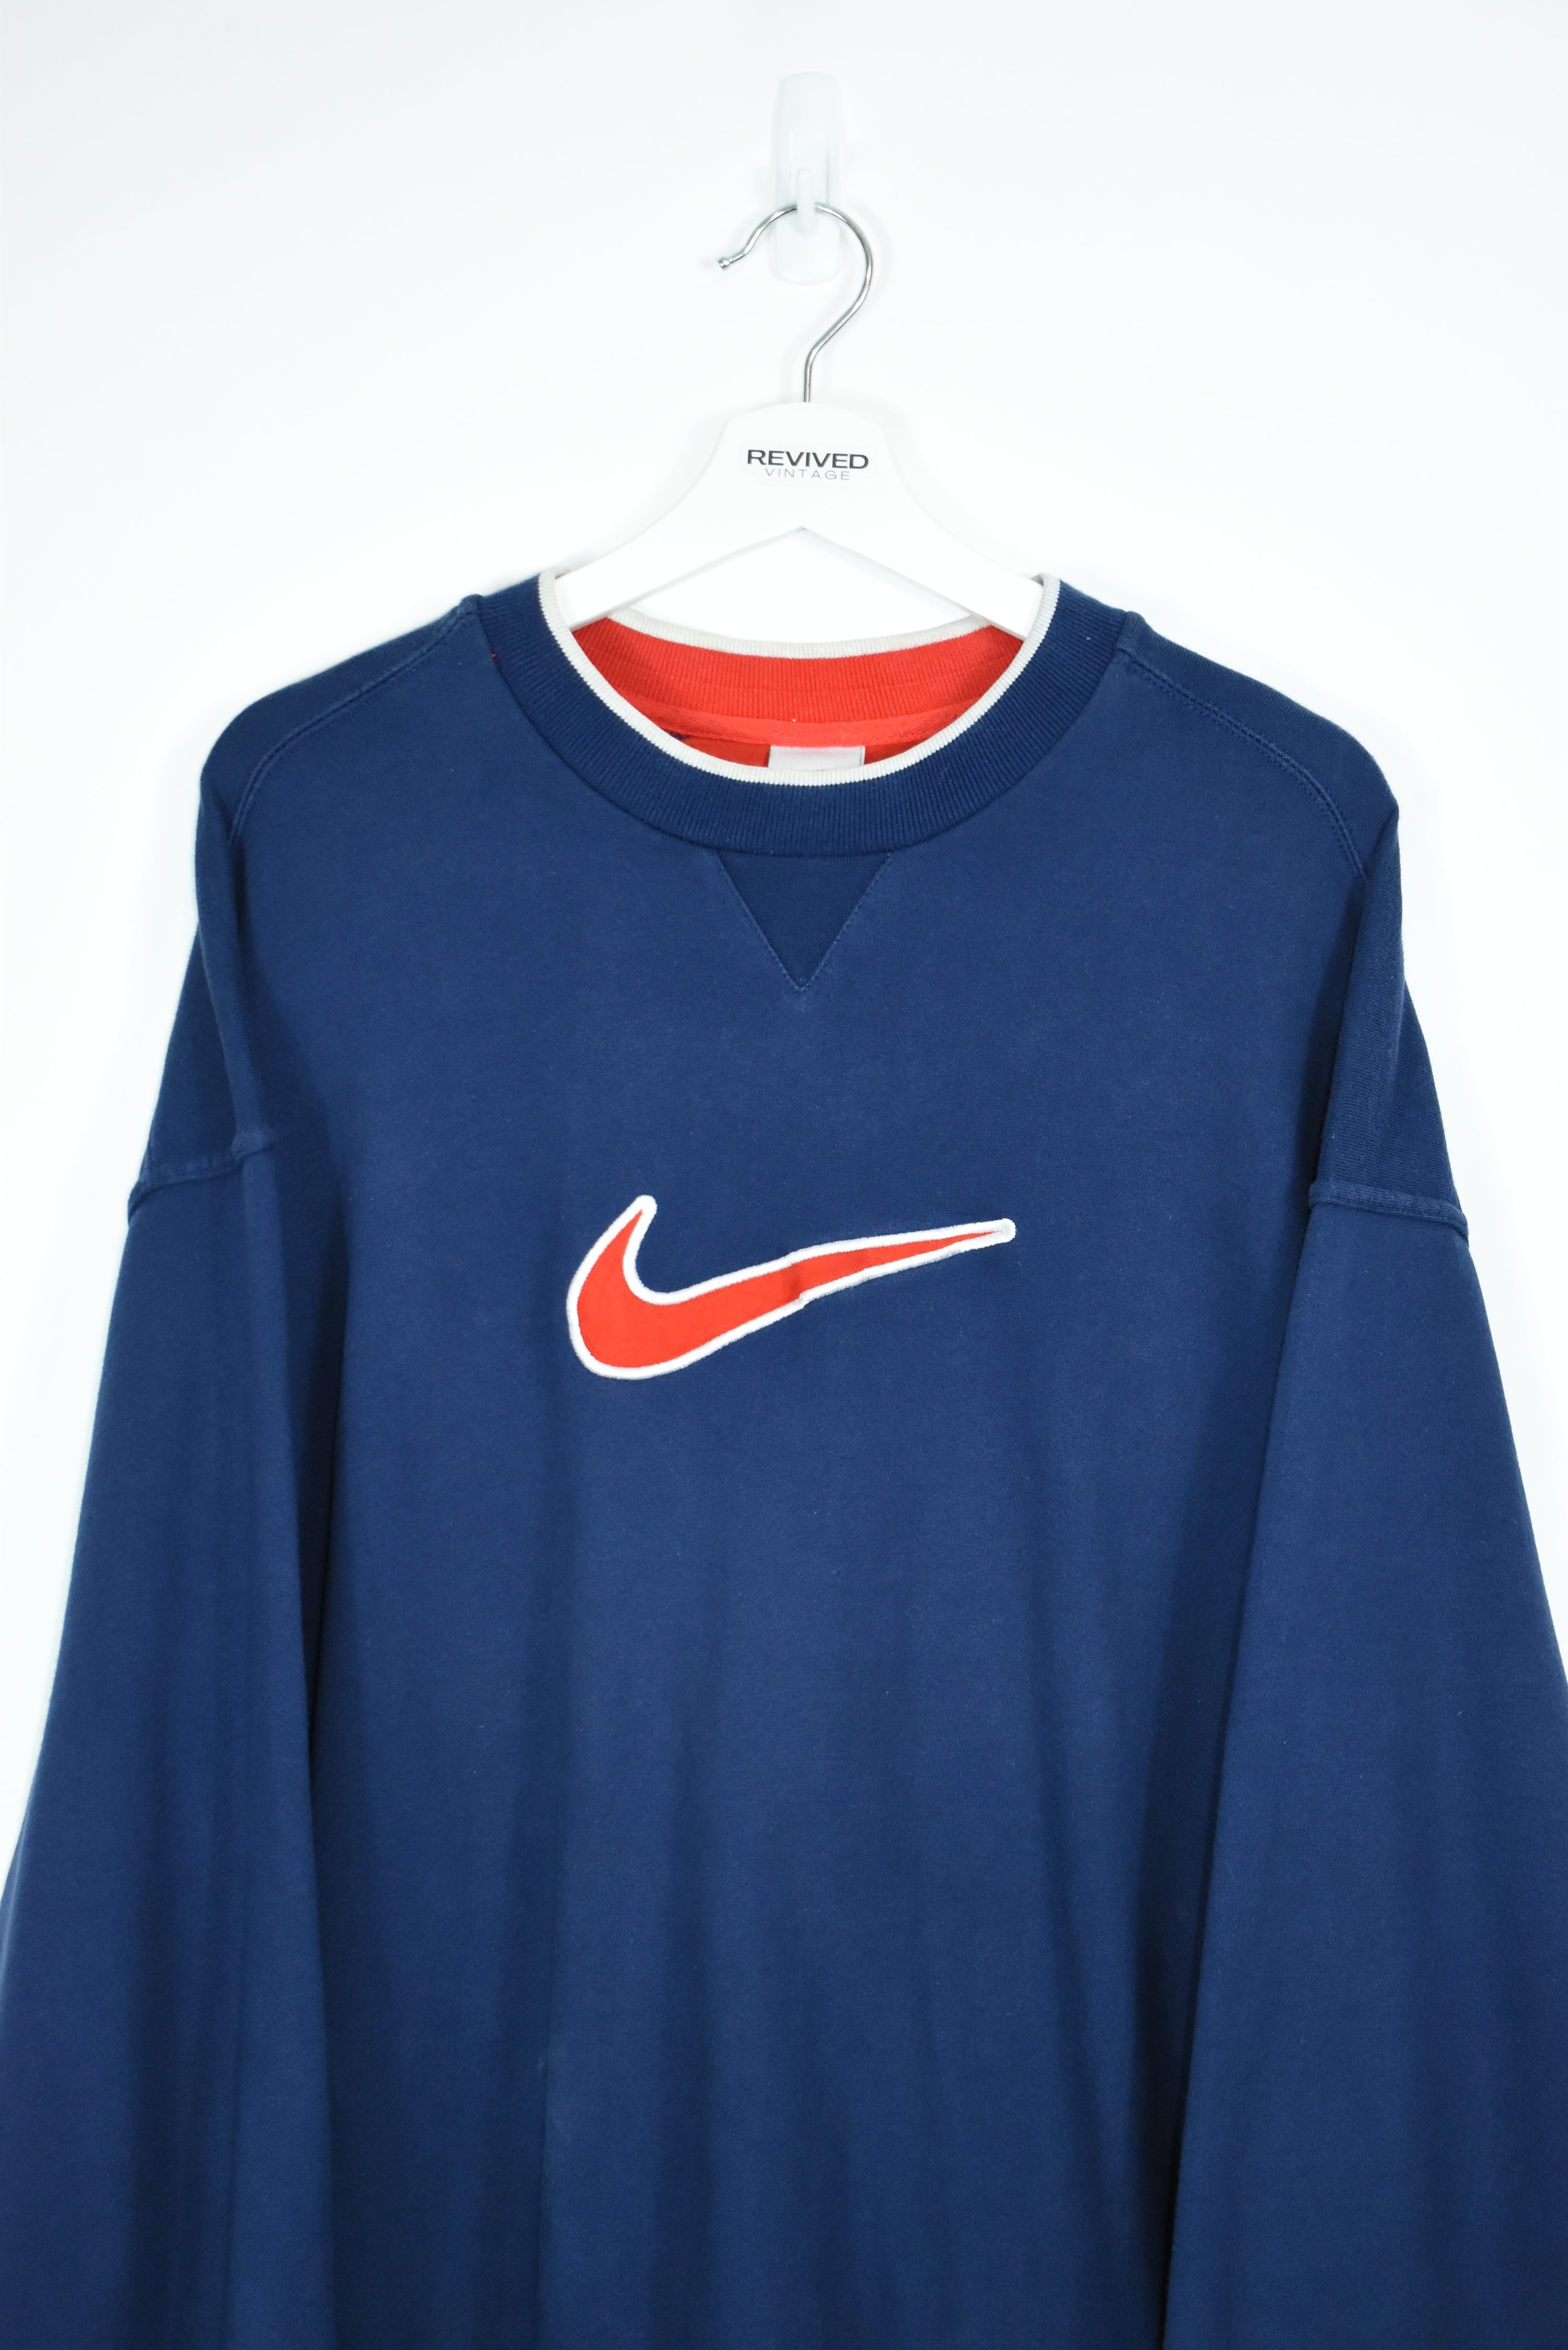 Vintage Nike Embroidery Swoosh Sweatshirt XLARGE